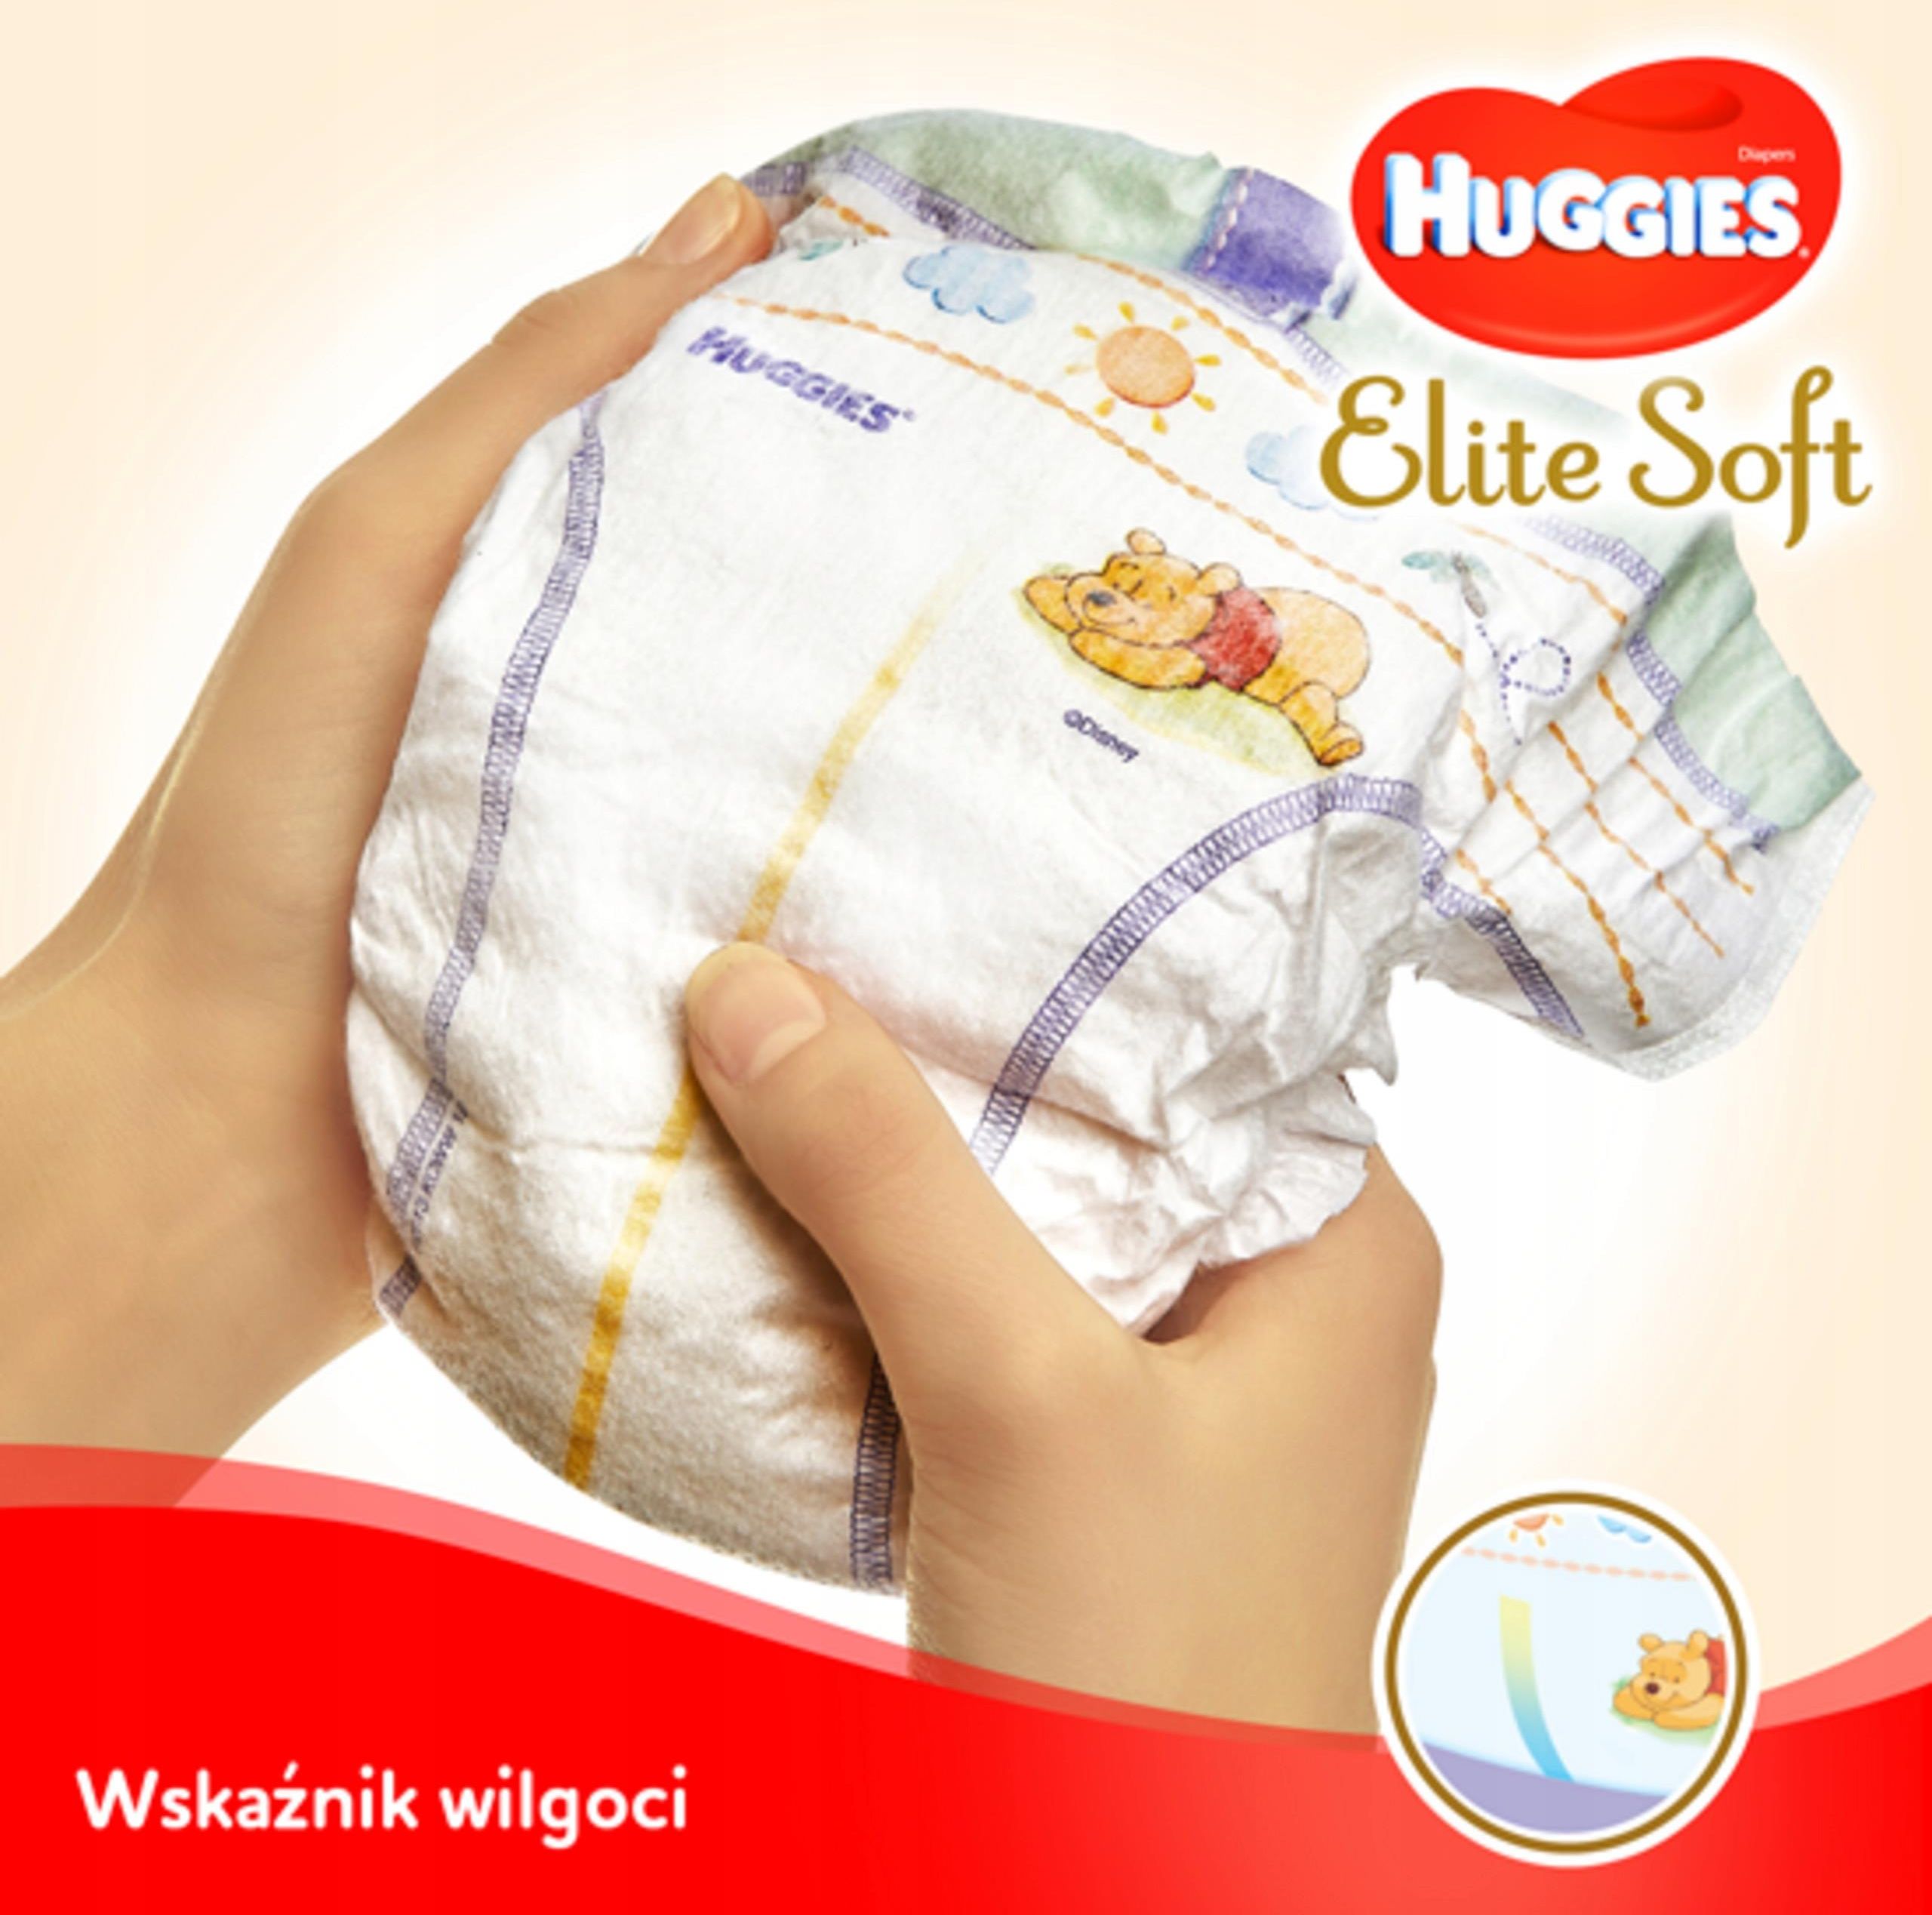 pieluszki huggies elite soft